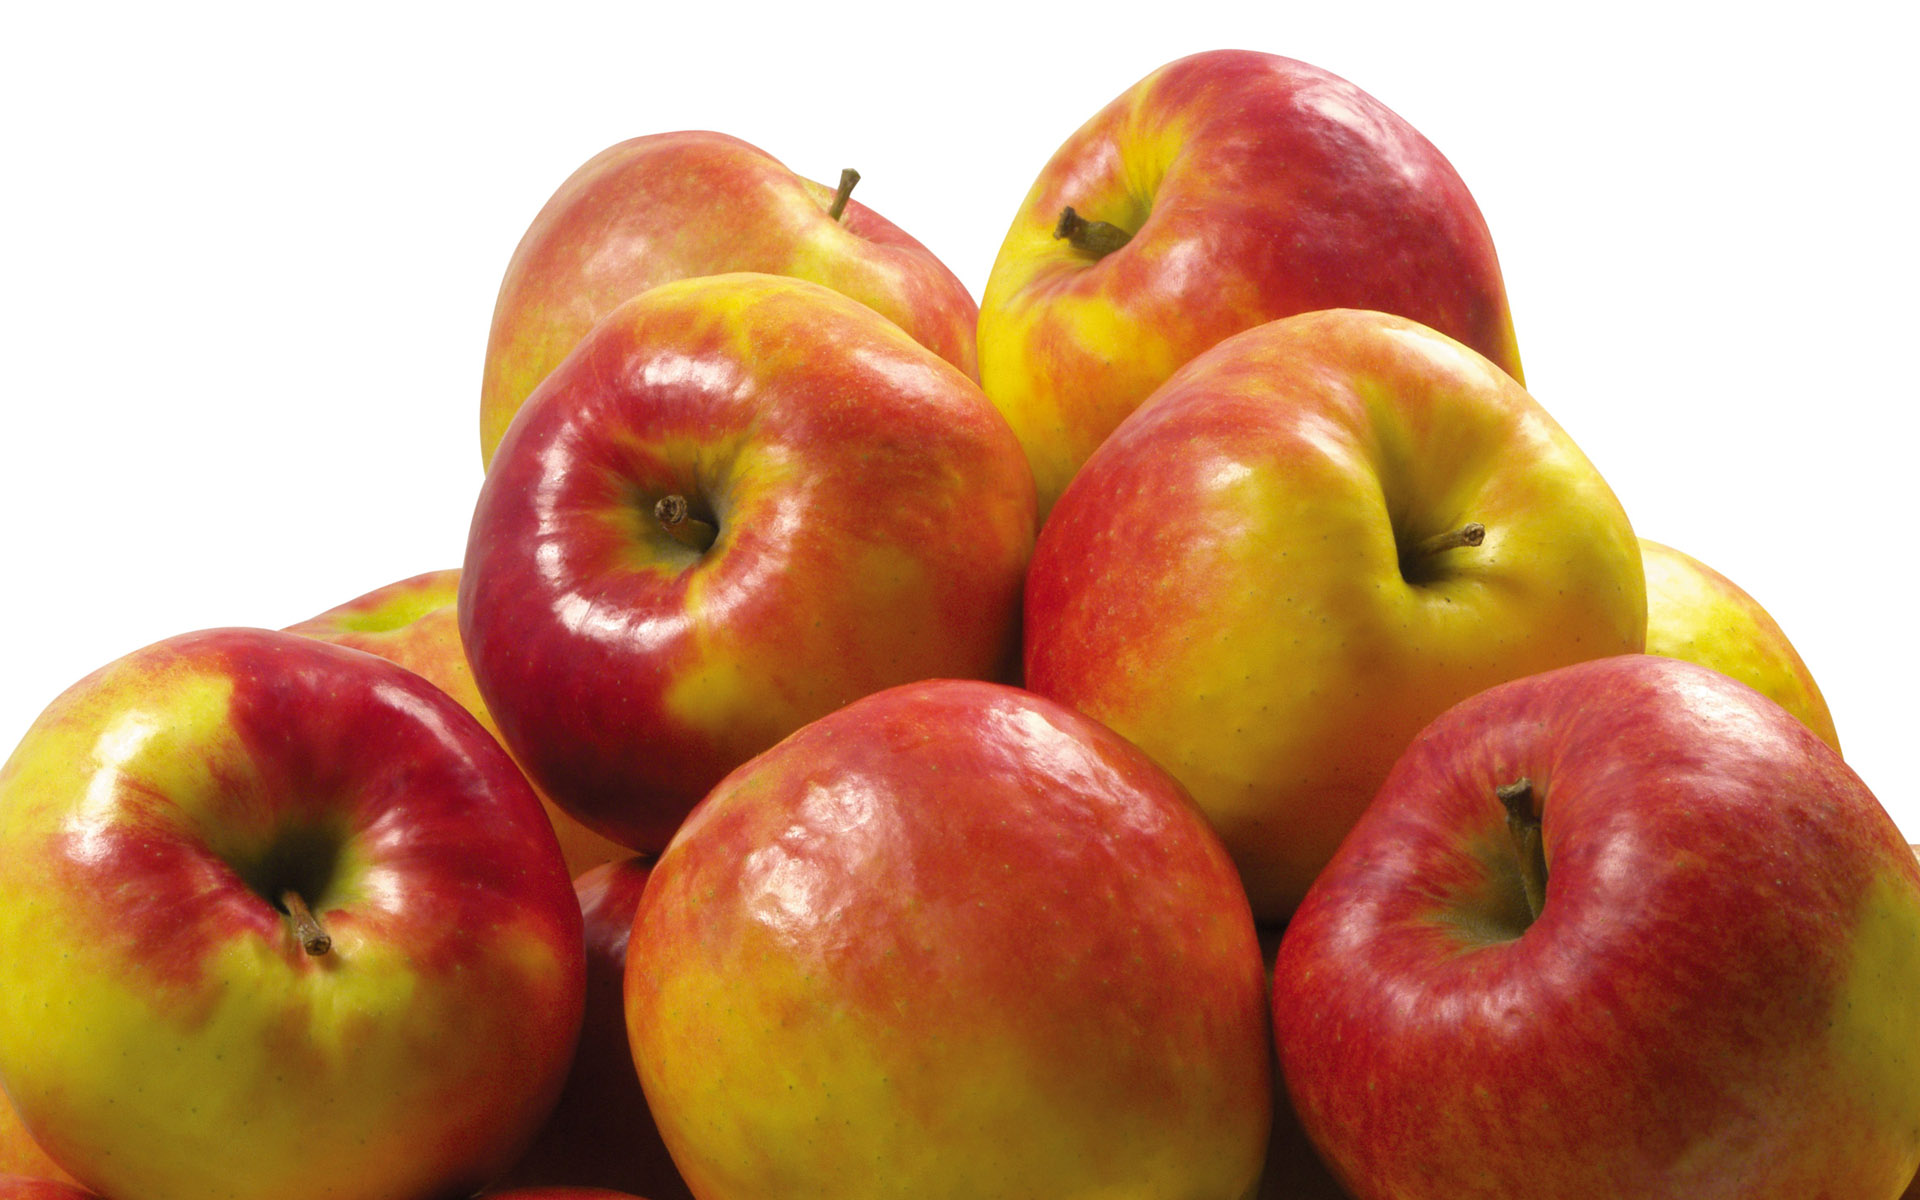 Яблоки из турецкого Сиирта экспортируются в 8 стран мира